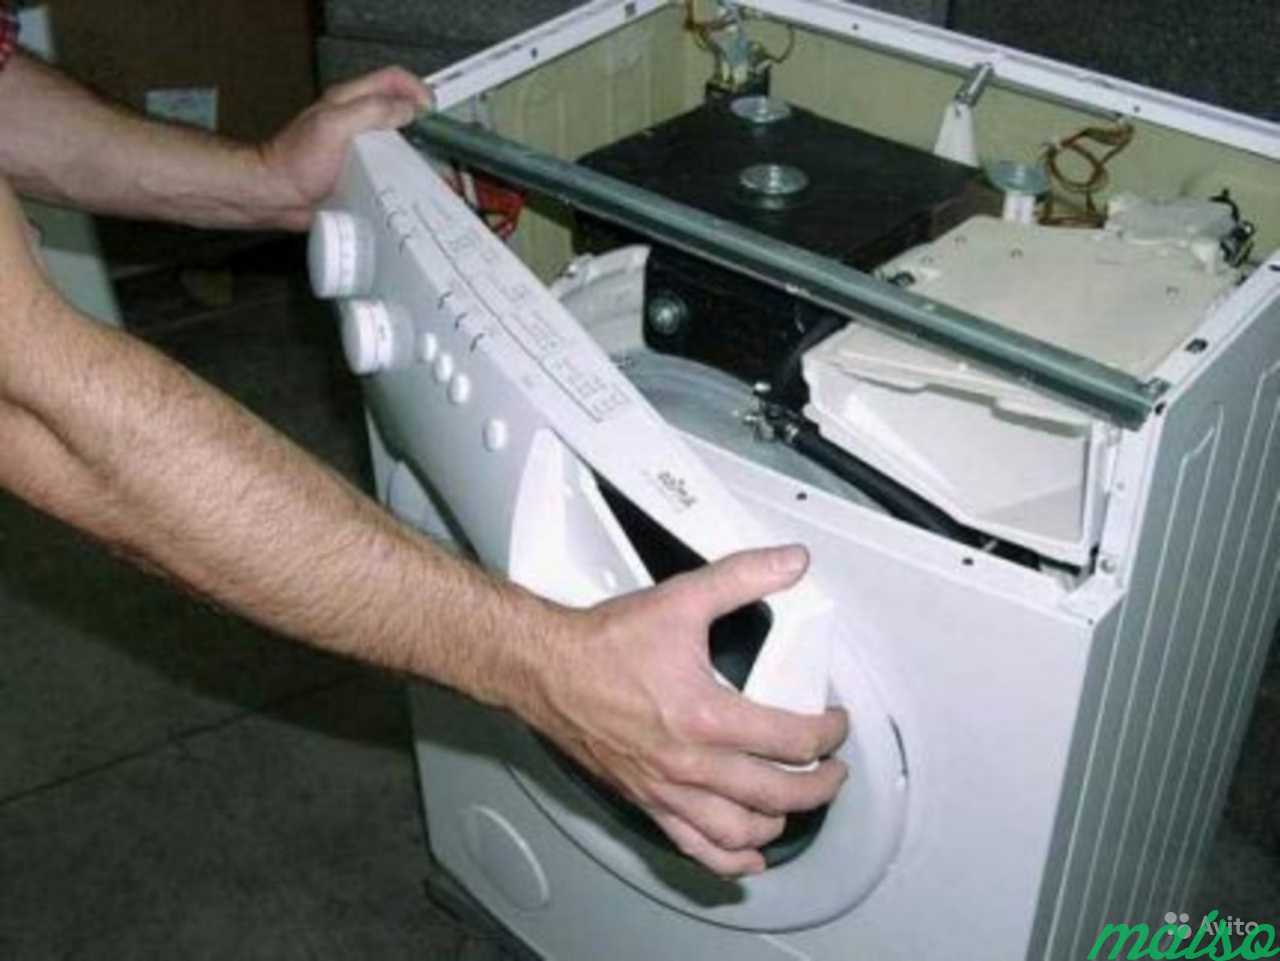 Stir ремонт стиральных машин. Стиральная машина Вестел 840т крепежные болты. Разобрать стиральную машину бош. Передняя панель стиральной машины самсунг. Передняя панель стиральной машины бош.